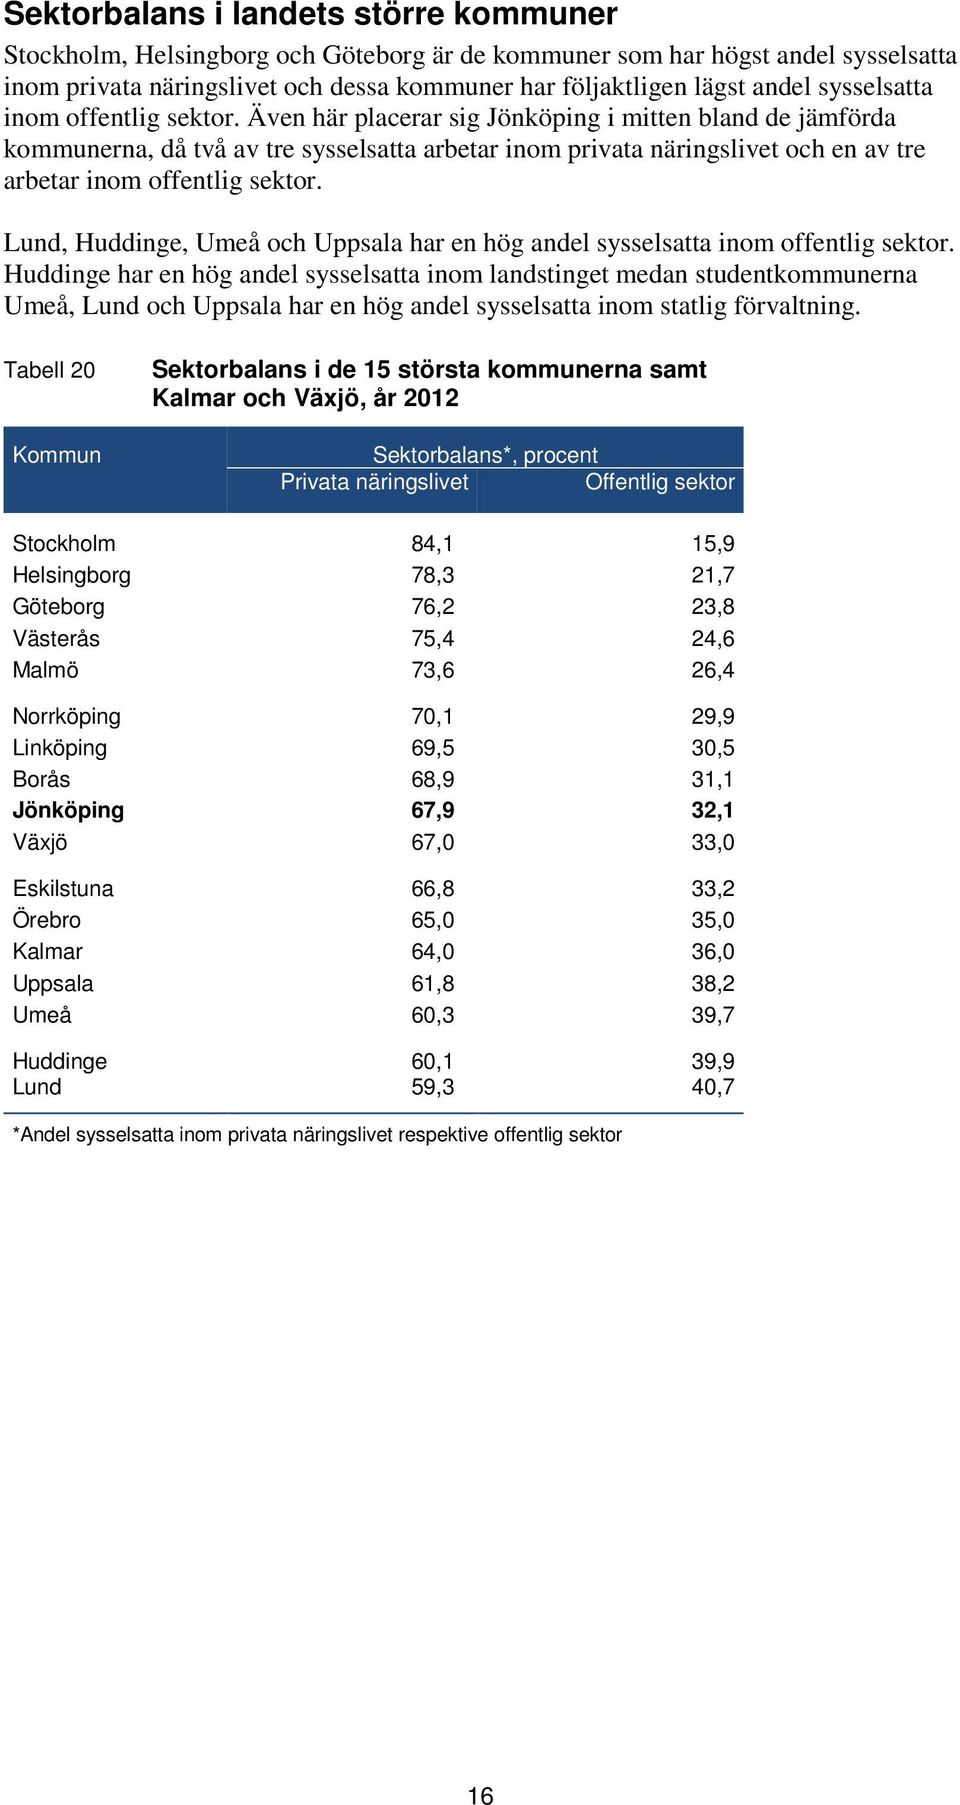 Lund, Huddinge, Umeå och Uppsala har en hög andel sysselsatta inom offentlig sektor.